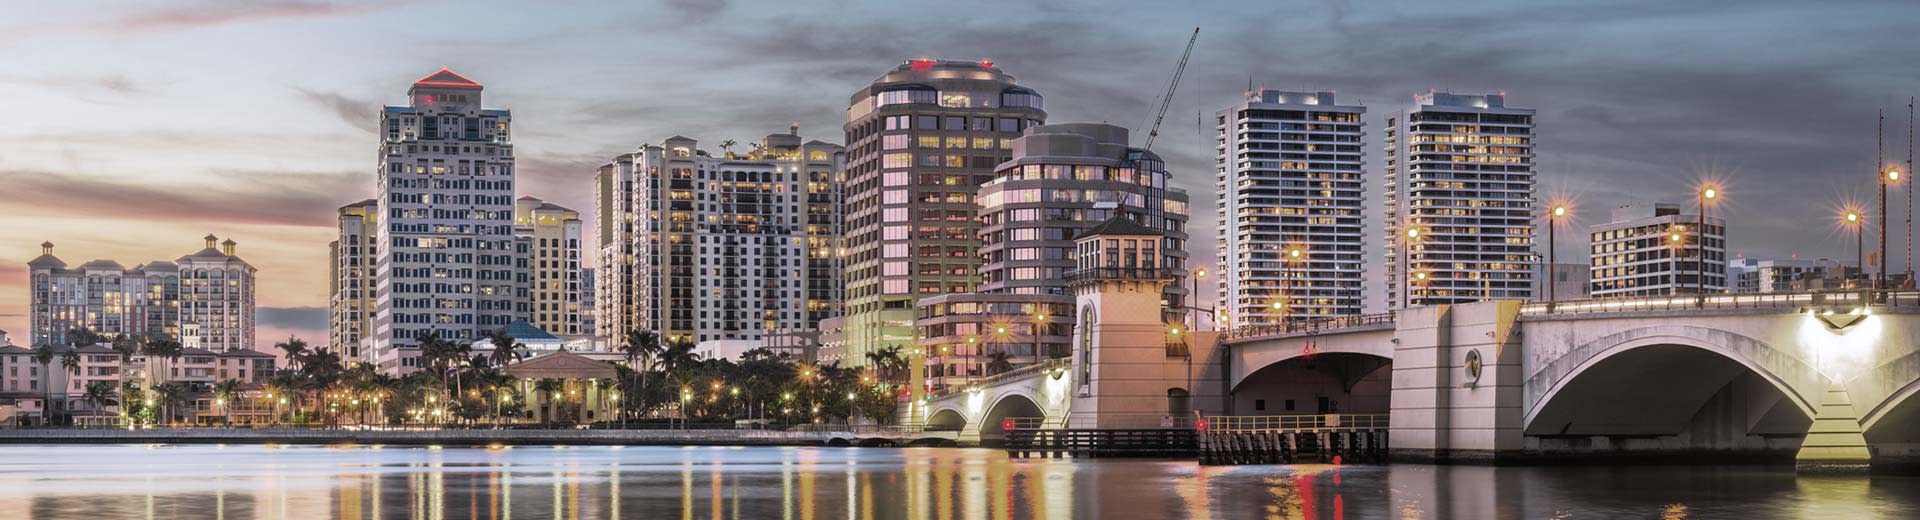 Les hôtels et les hébergements de grande hauteur dominent la ligne d'horizon à Palm Beach.